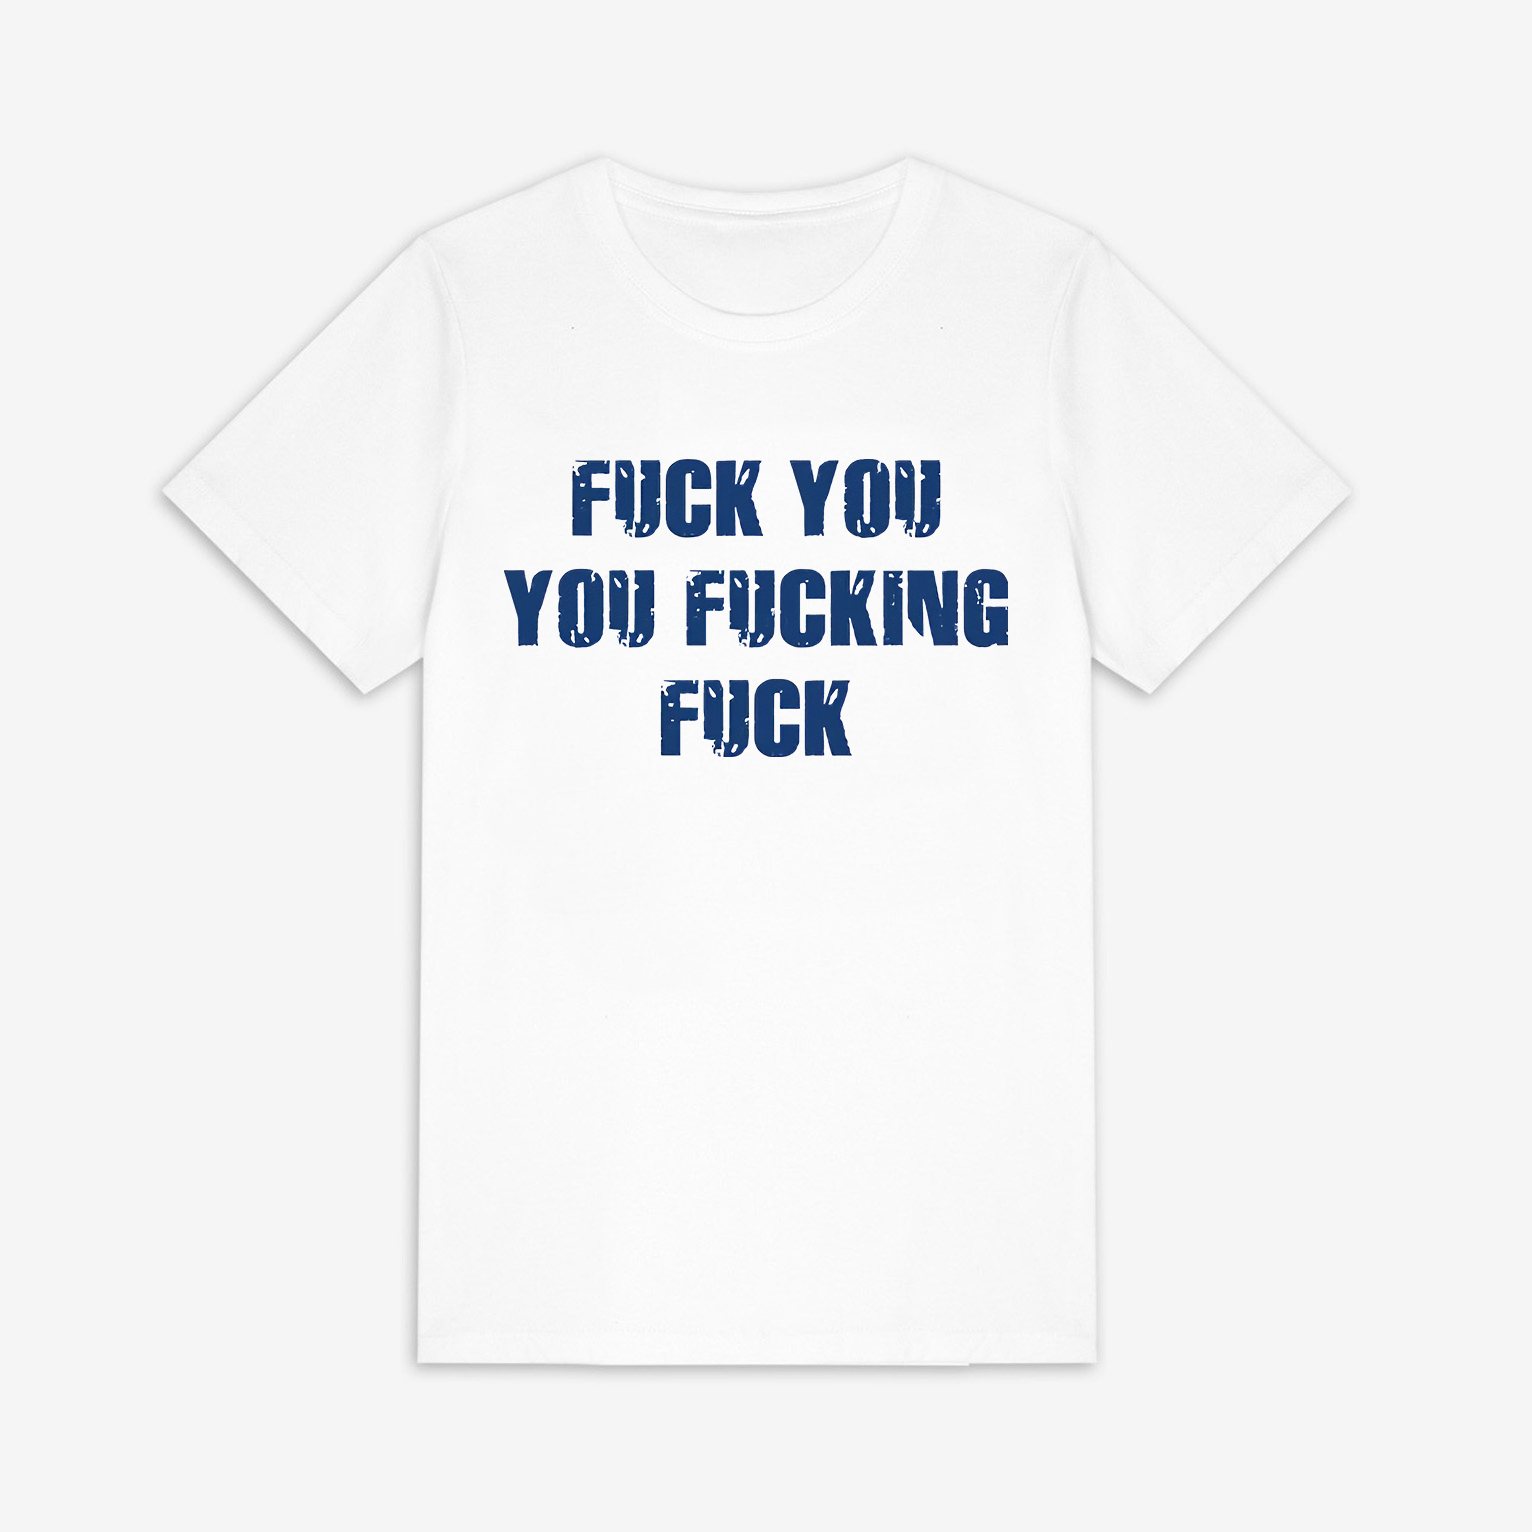 Fu*k You You Fucking Fuck Printed Women's T-shirt